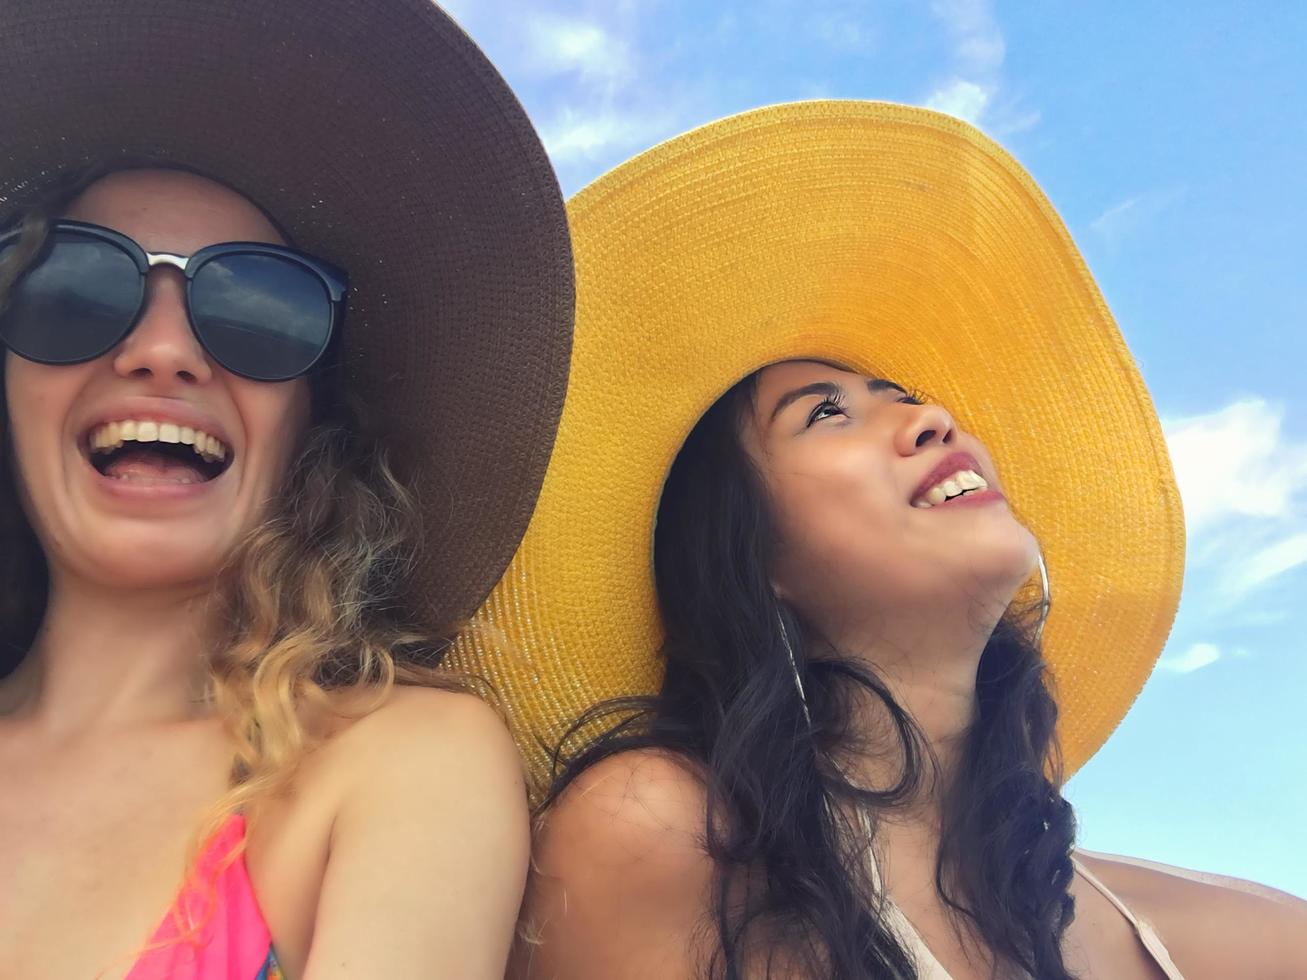 mulheres estão tirando fotos e tirando selfie com amigos na areia da praia no verão.